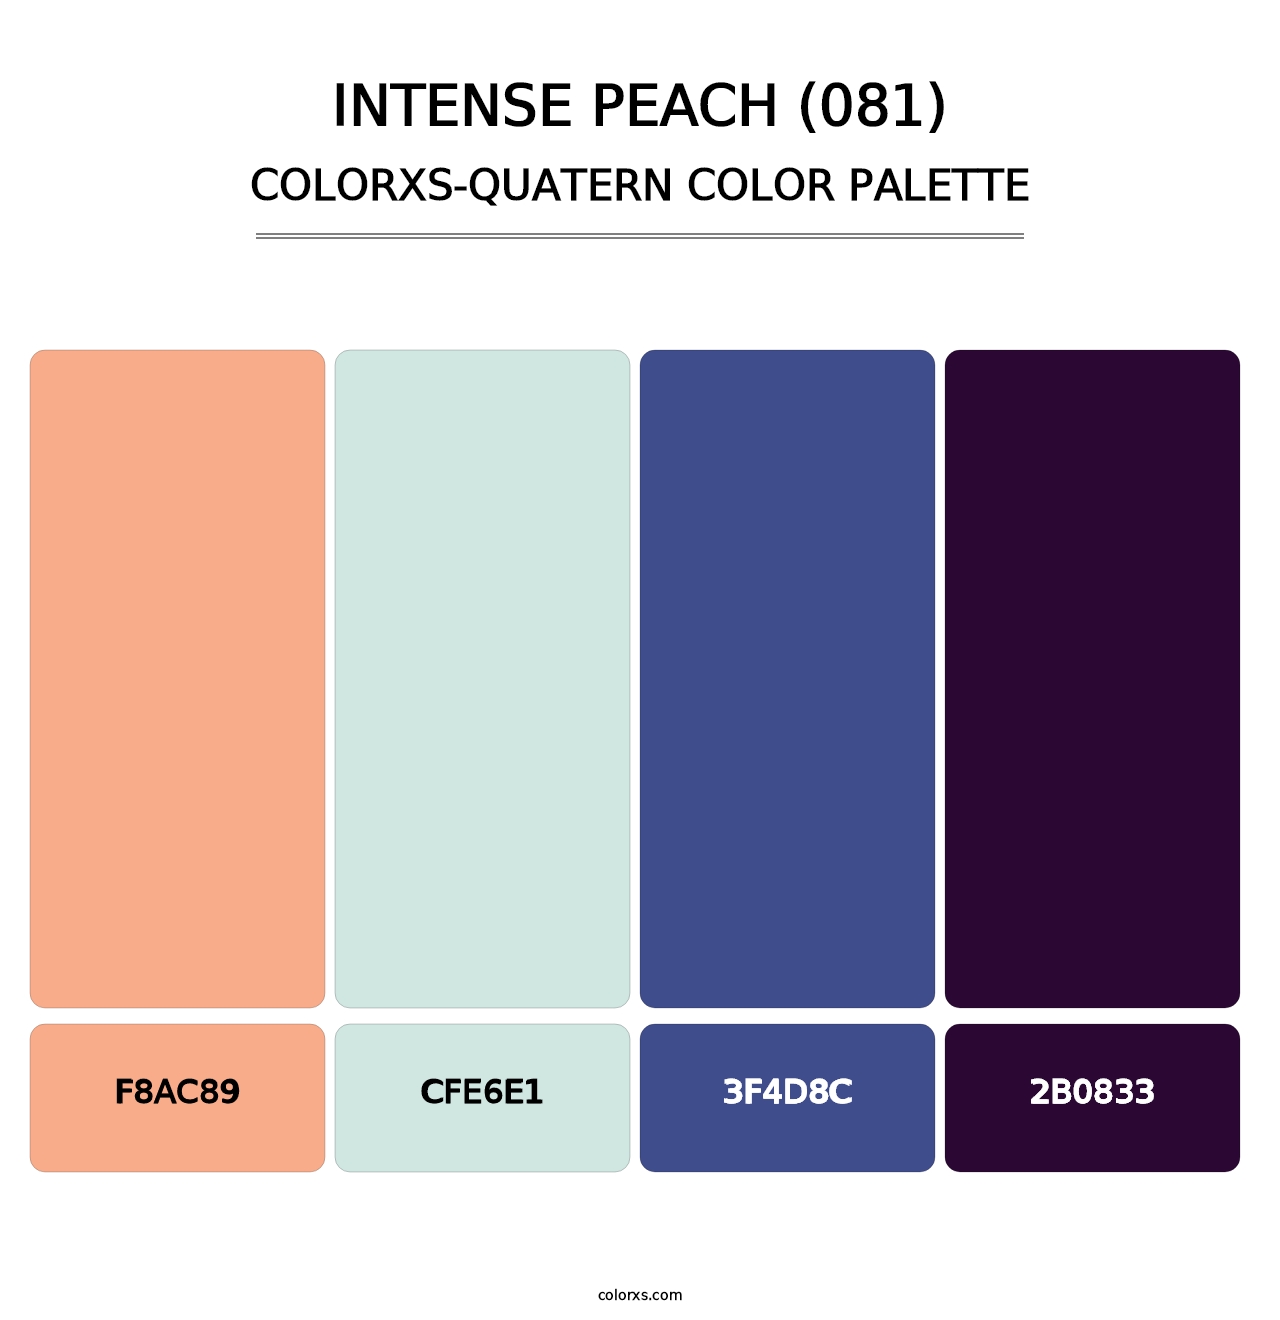 Intense Peach (081) - Colorxs Quatern Palette